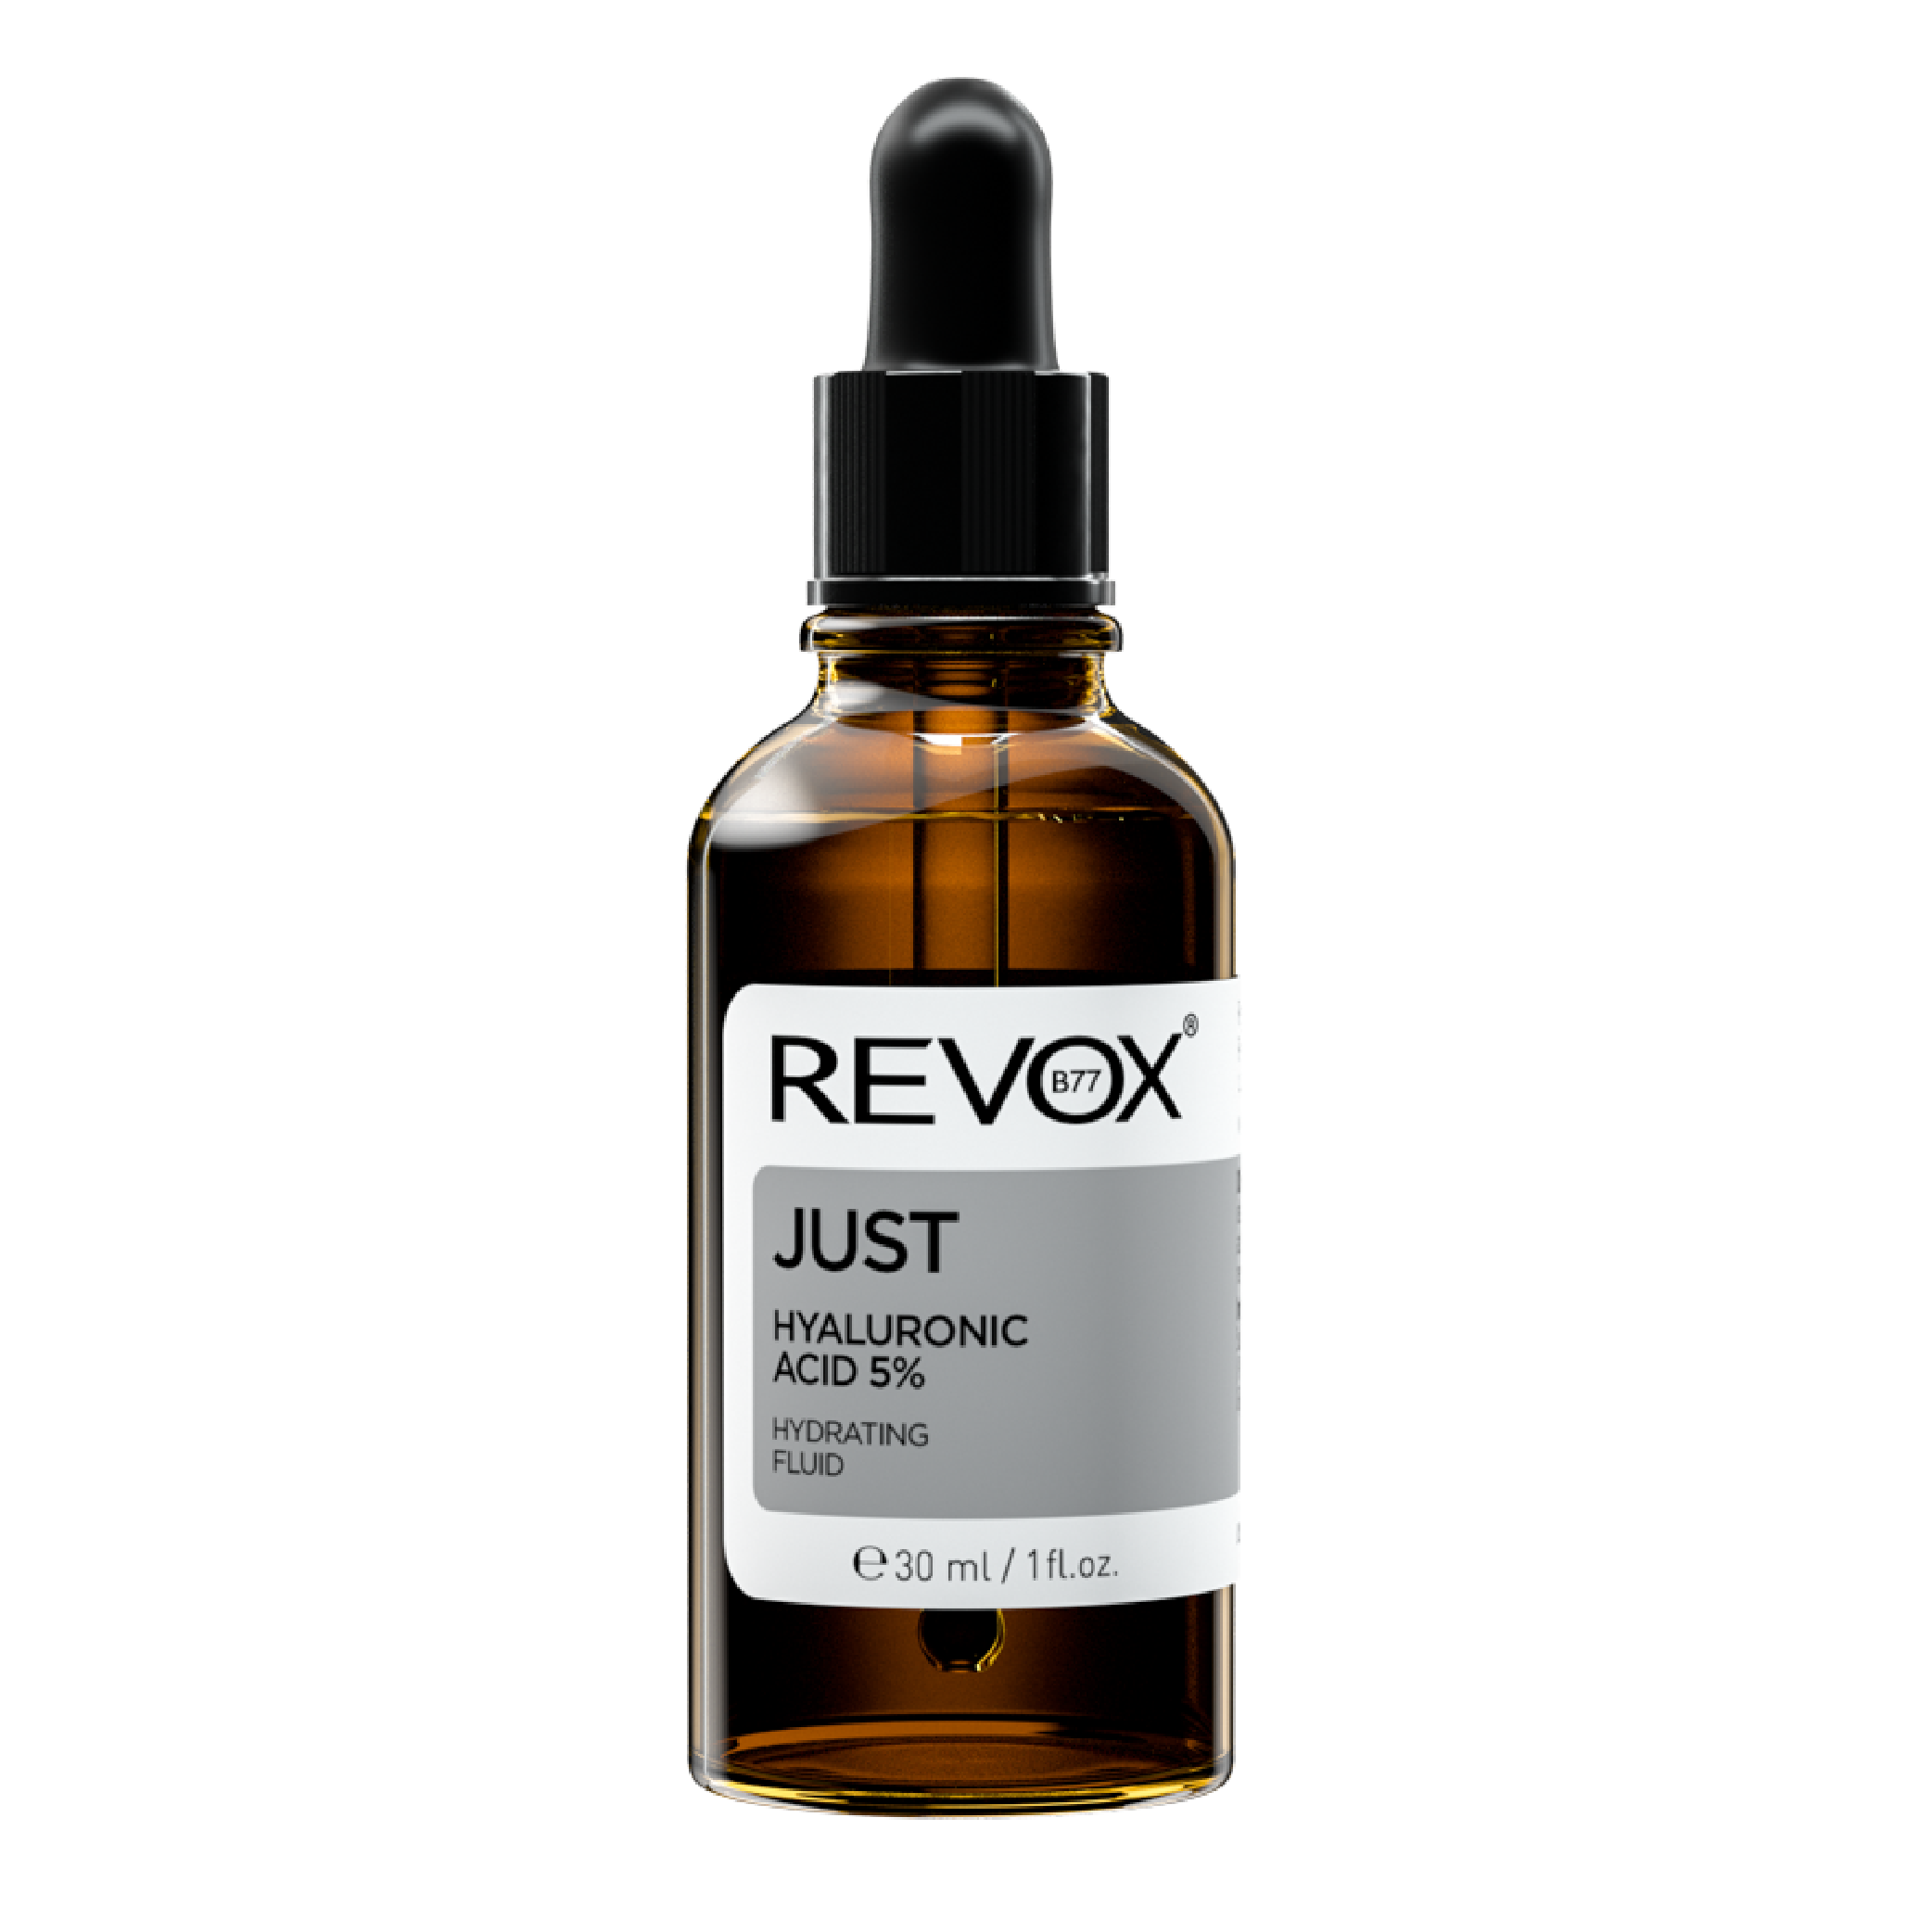 Tinh chất dưỡng ẩm cho mặt và cổ Revox B77 Just - Hyaluronic Acid 5% - 30ml